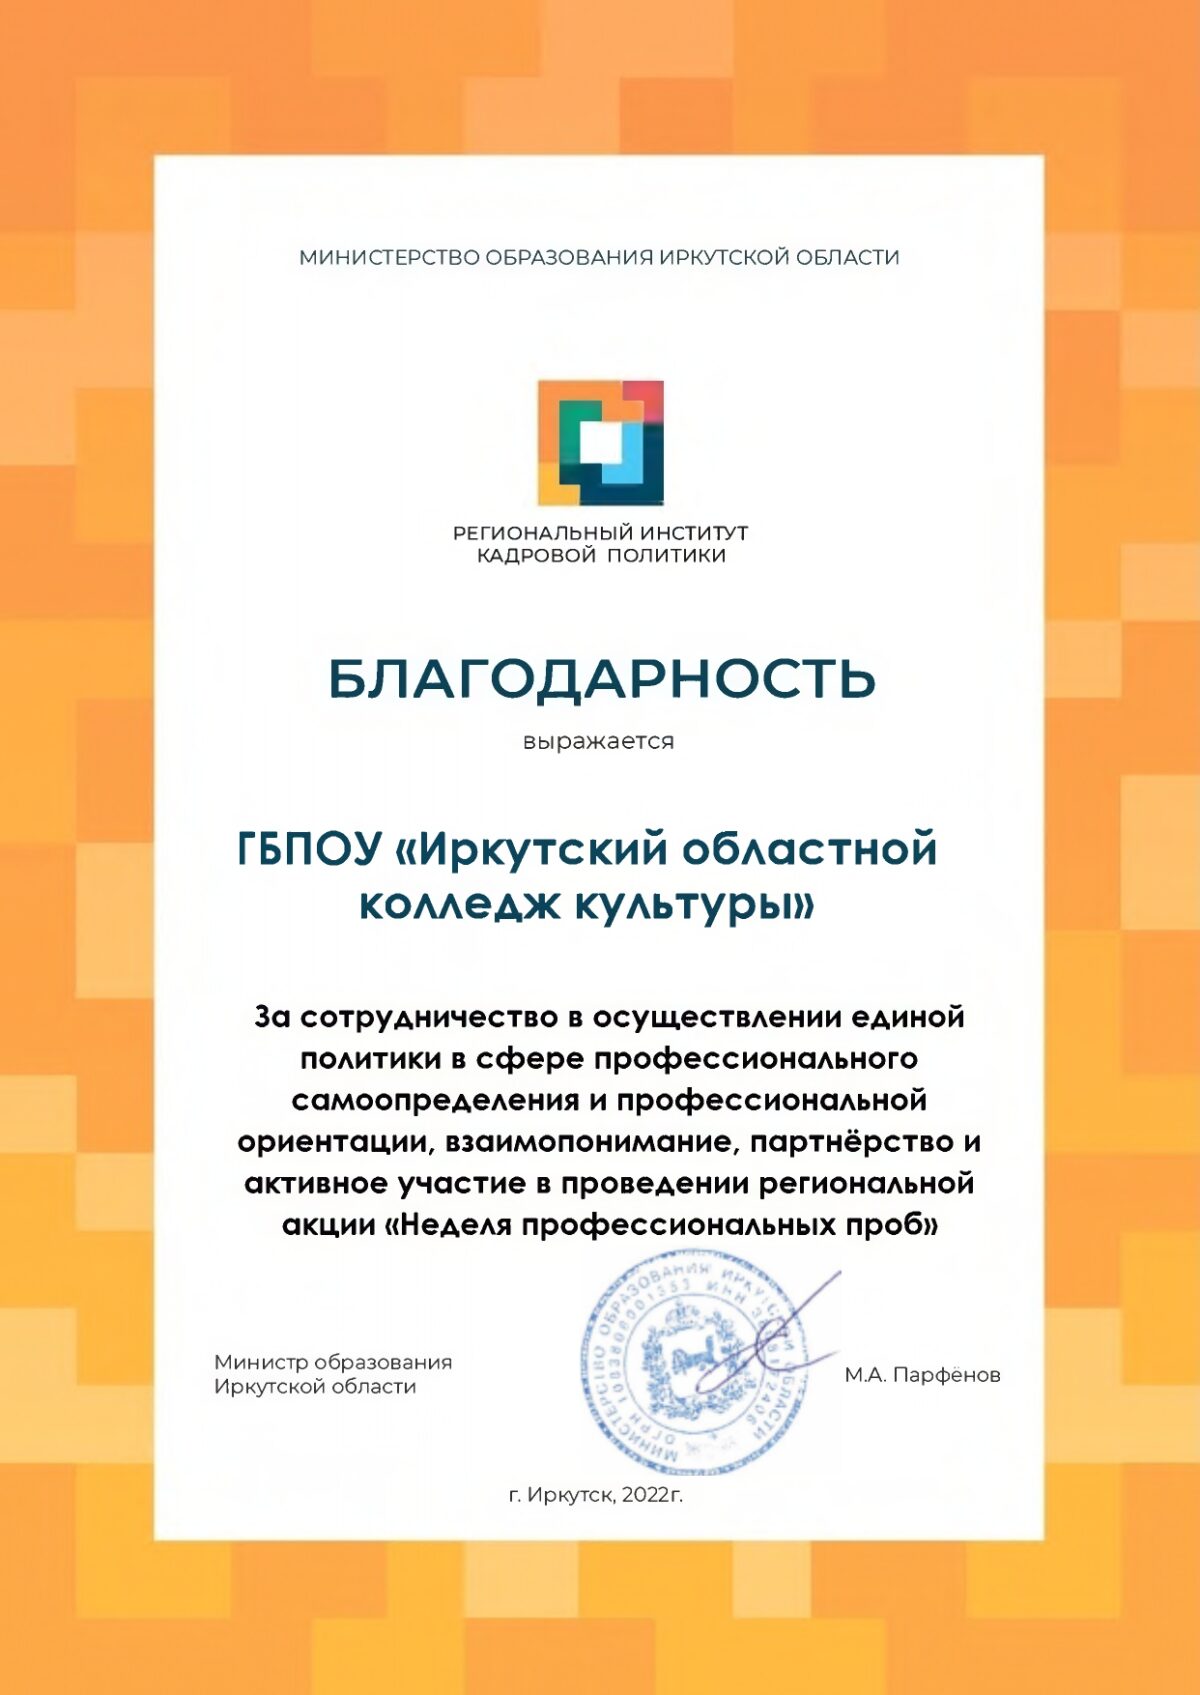 Благодарность от министерства образования Иркутской области